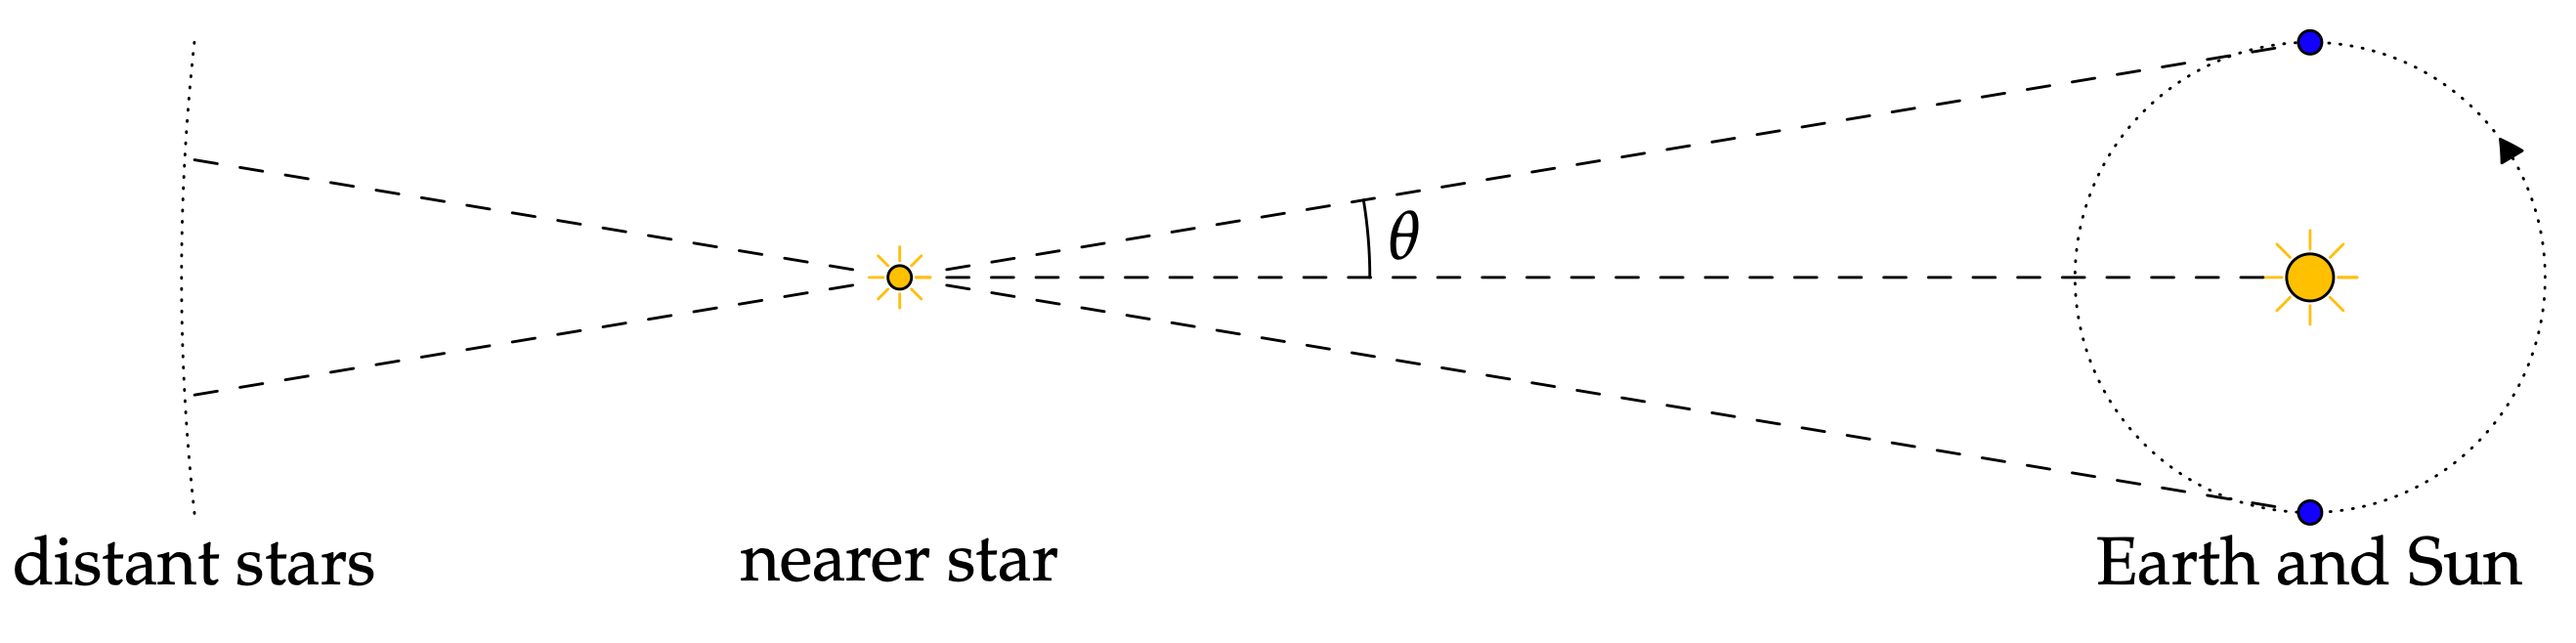 astronomi eksempel - billede af www.math.uci.edu